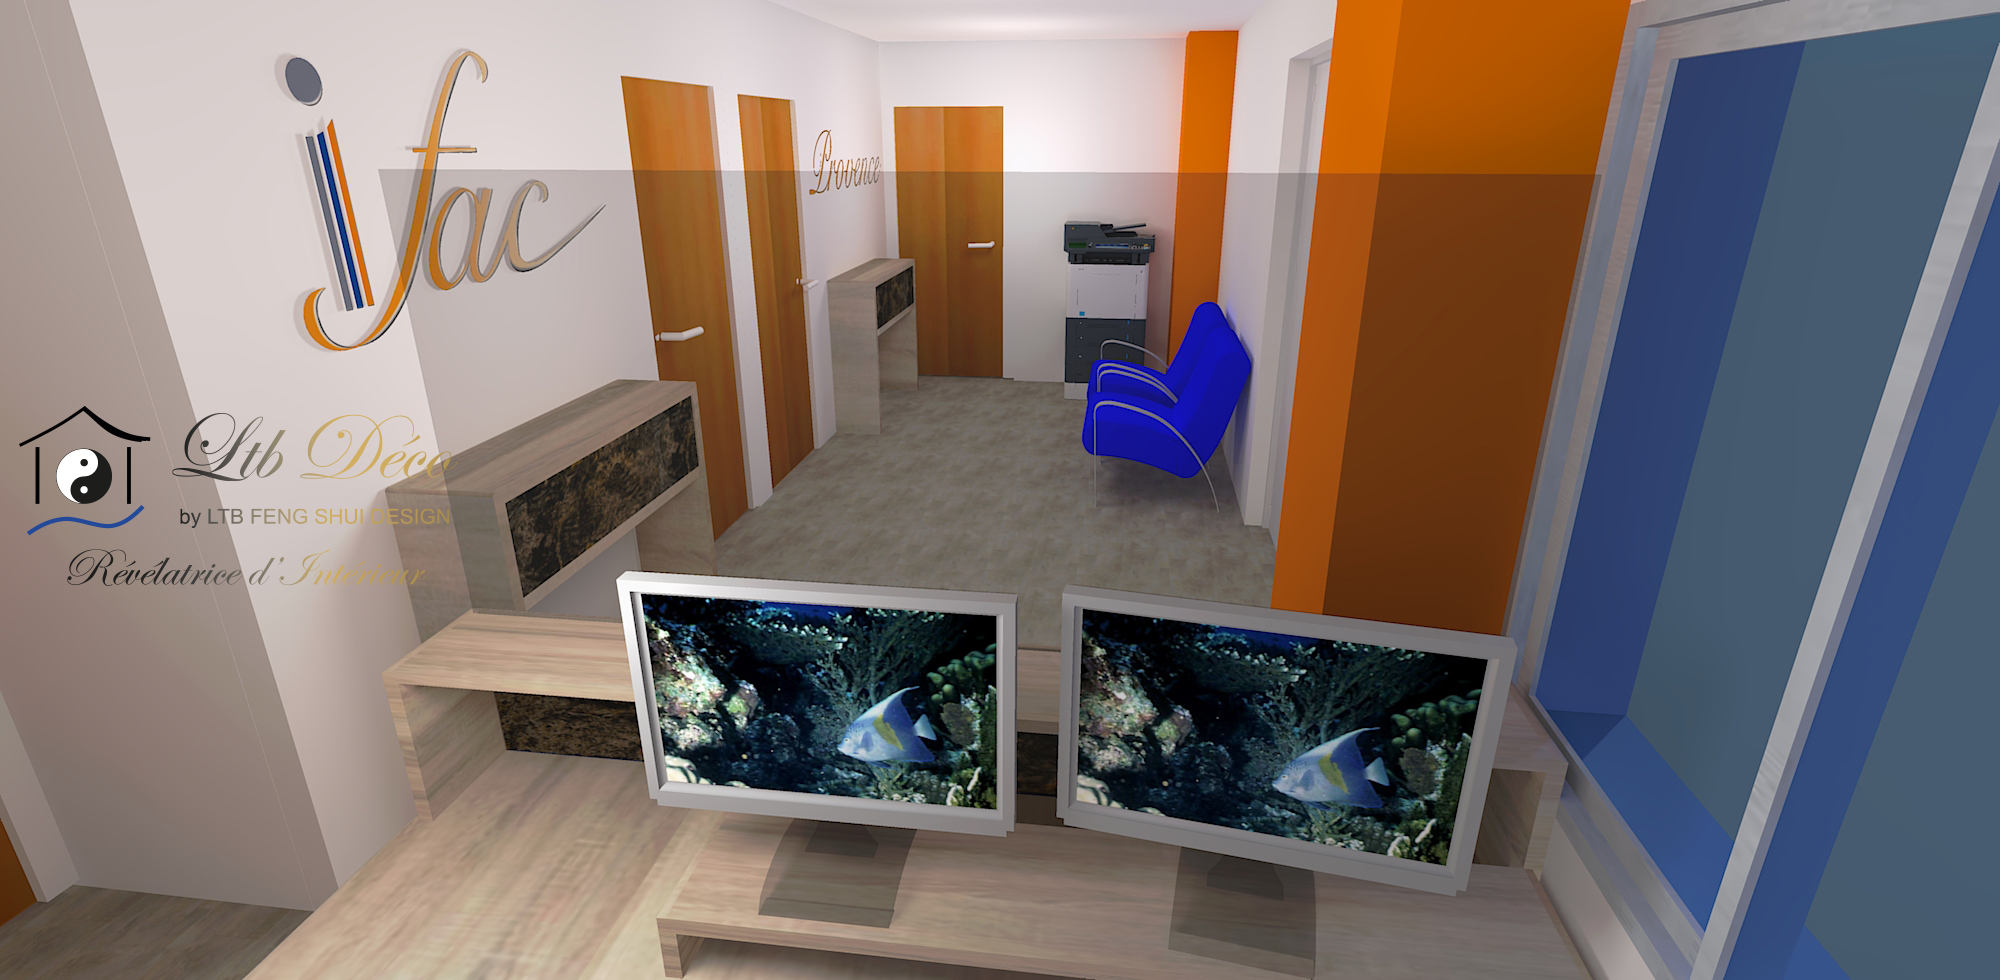 Visuel 3D présentation du projet de décoration d'intérieur